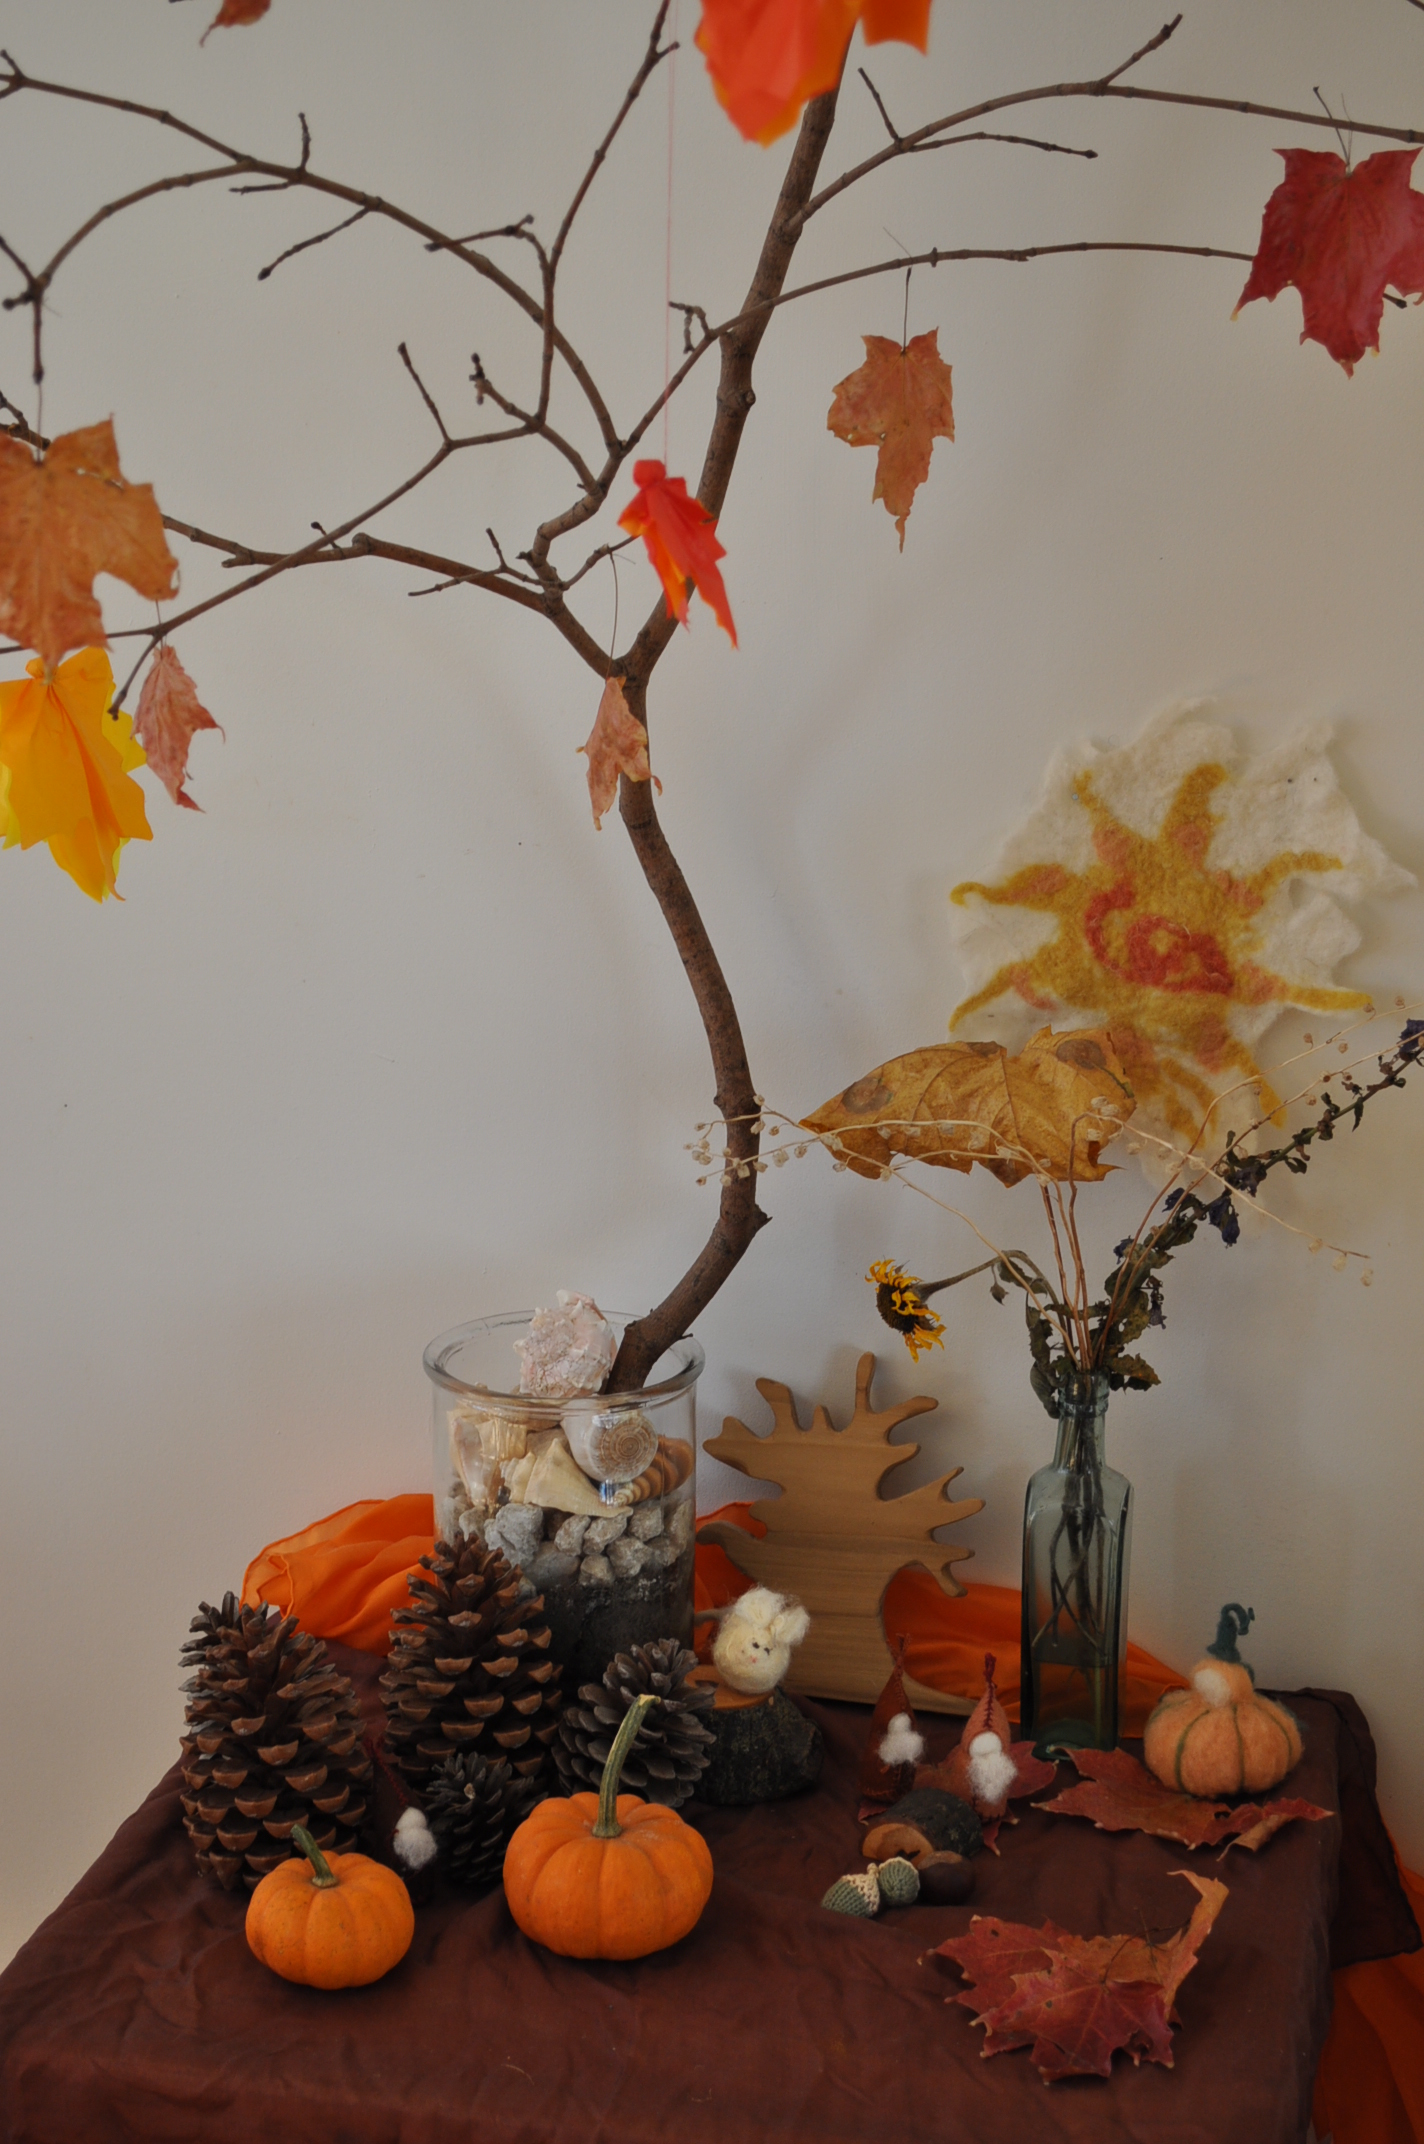 Autumn Nature table